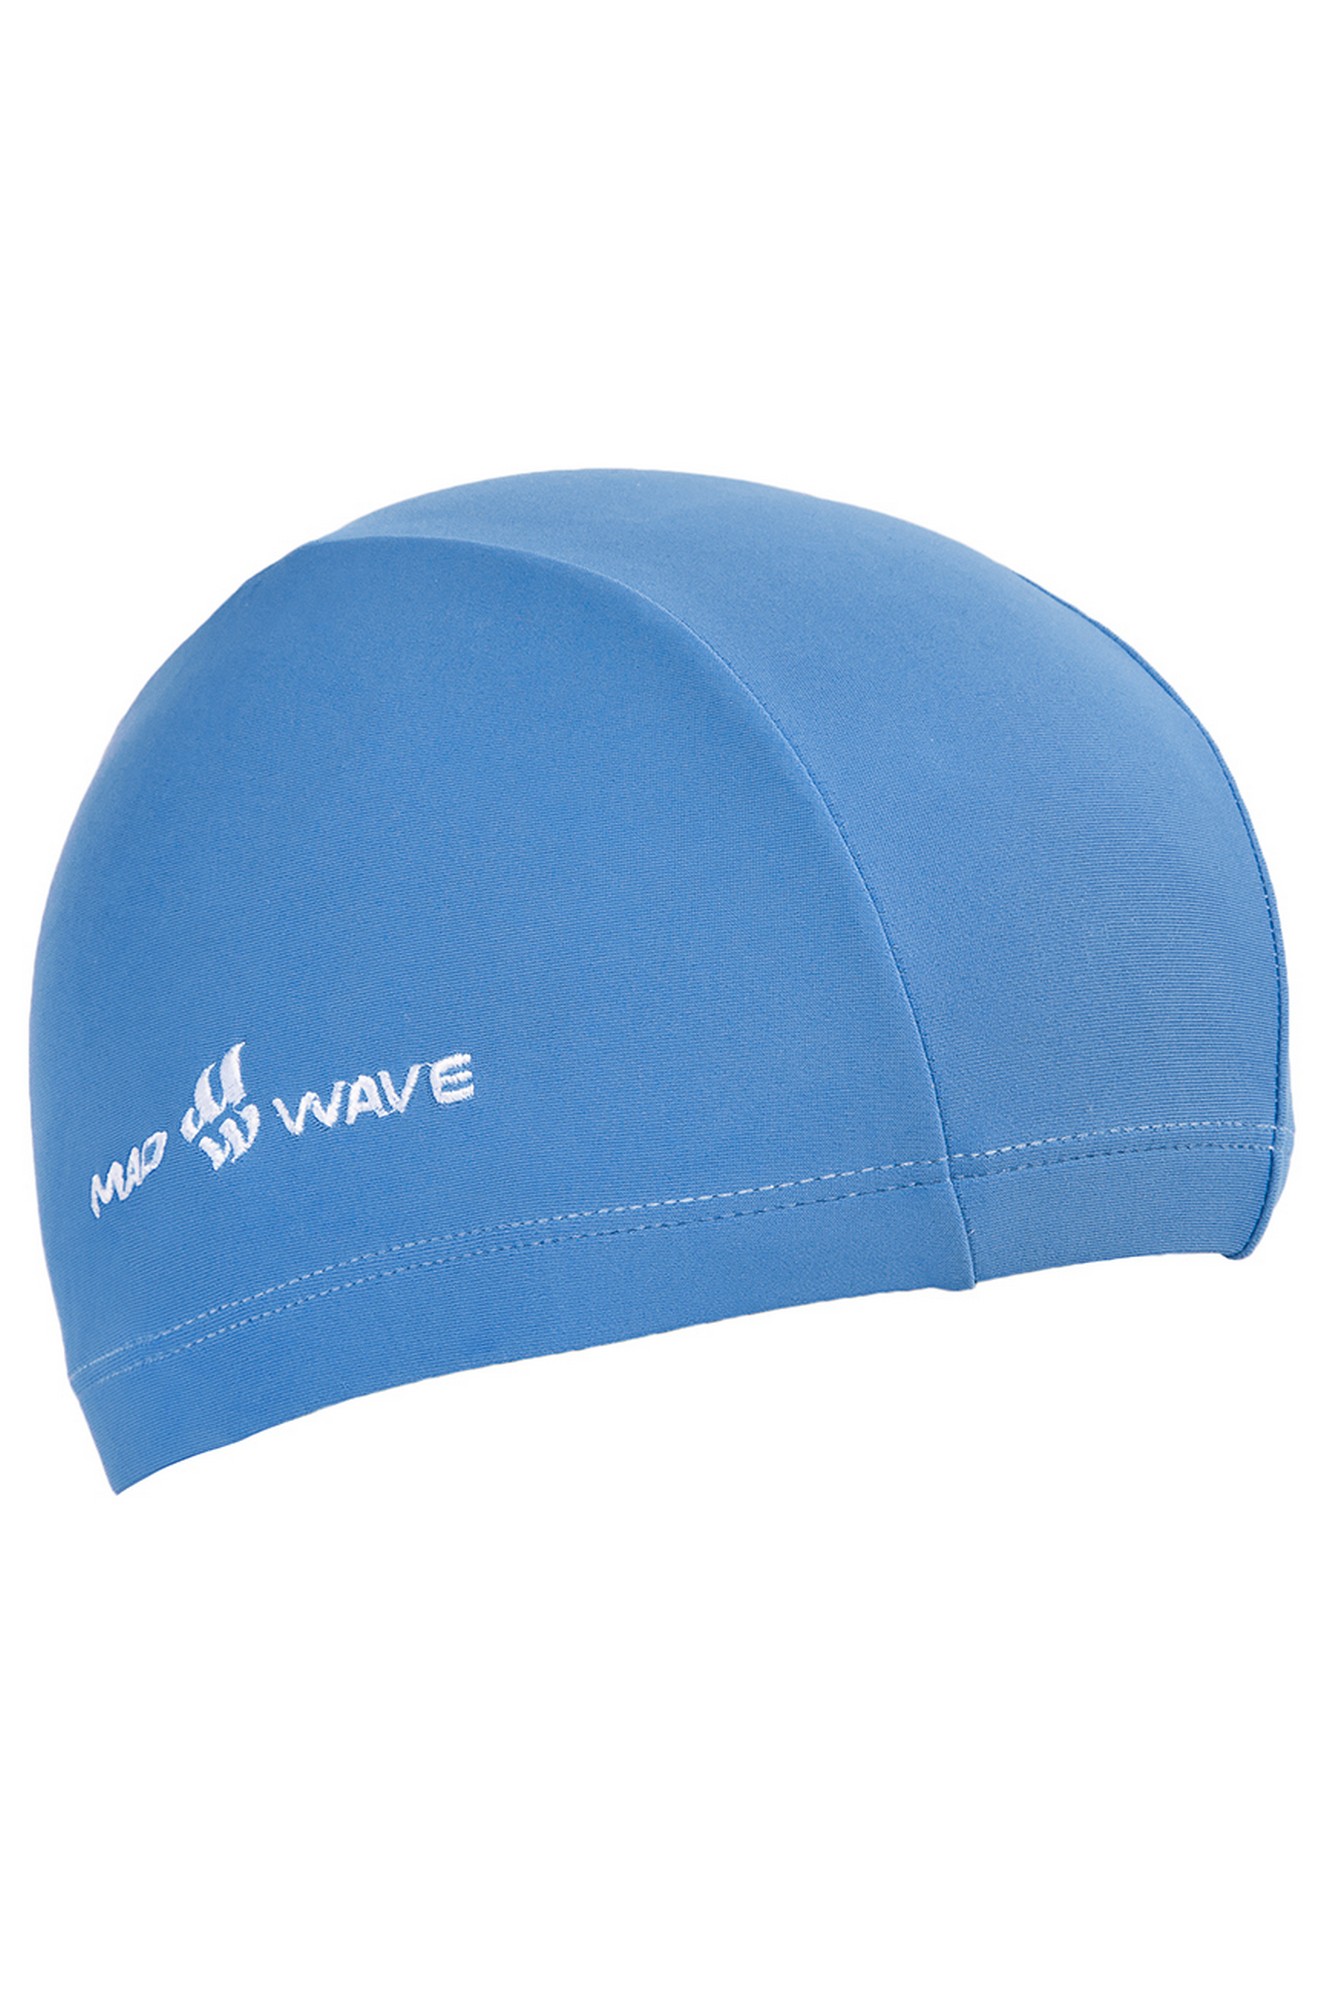 Юниорская текстильная шапочка Mad Wave Lycra Junior M0520 01 0 04W голубой 1333_2000